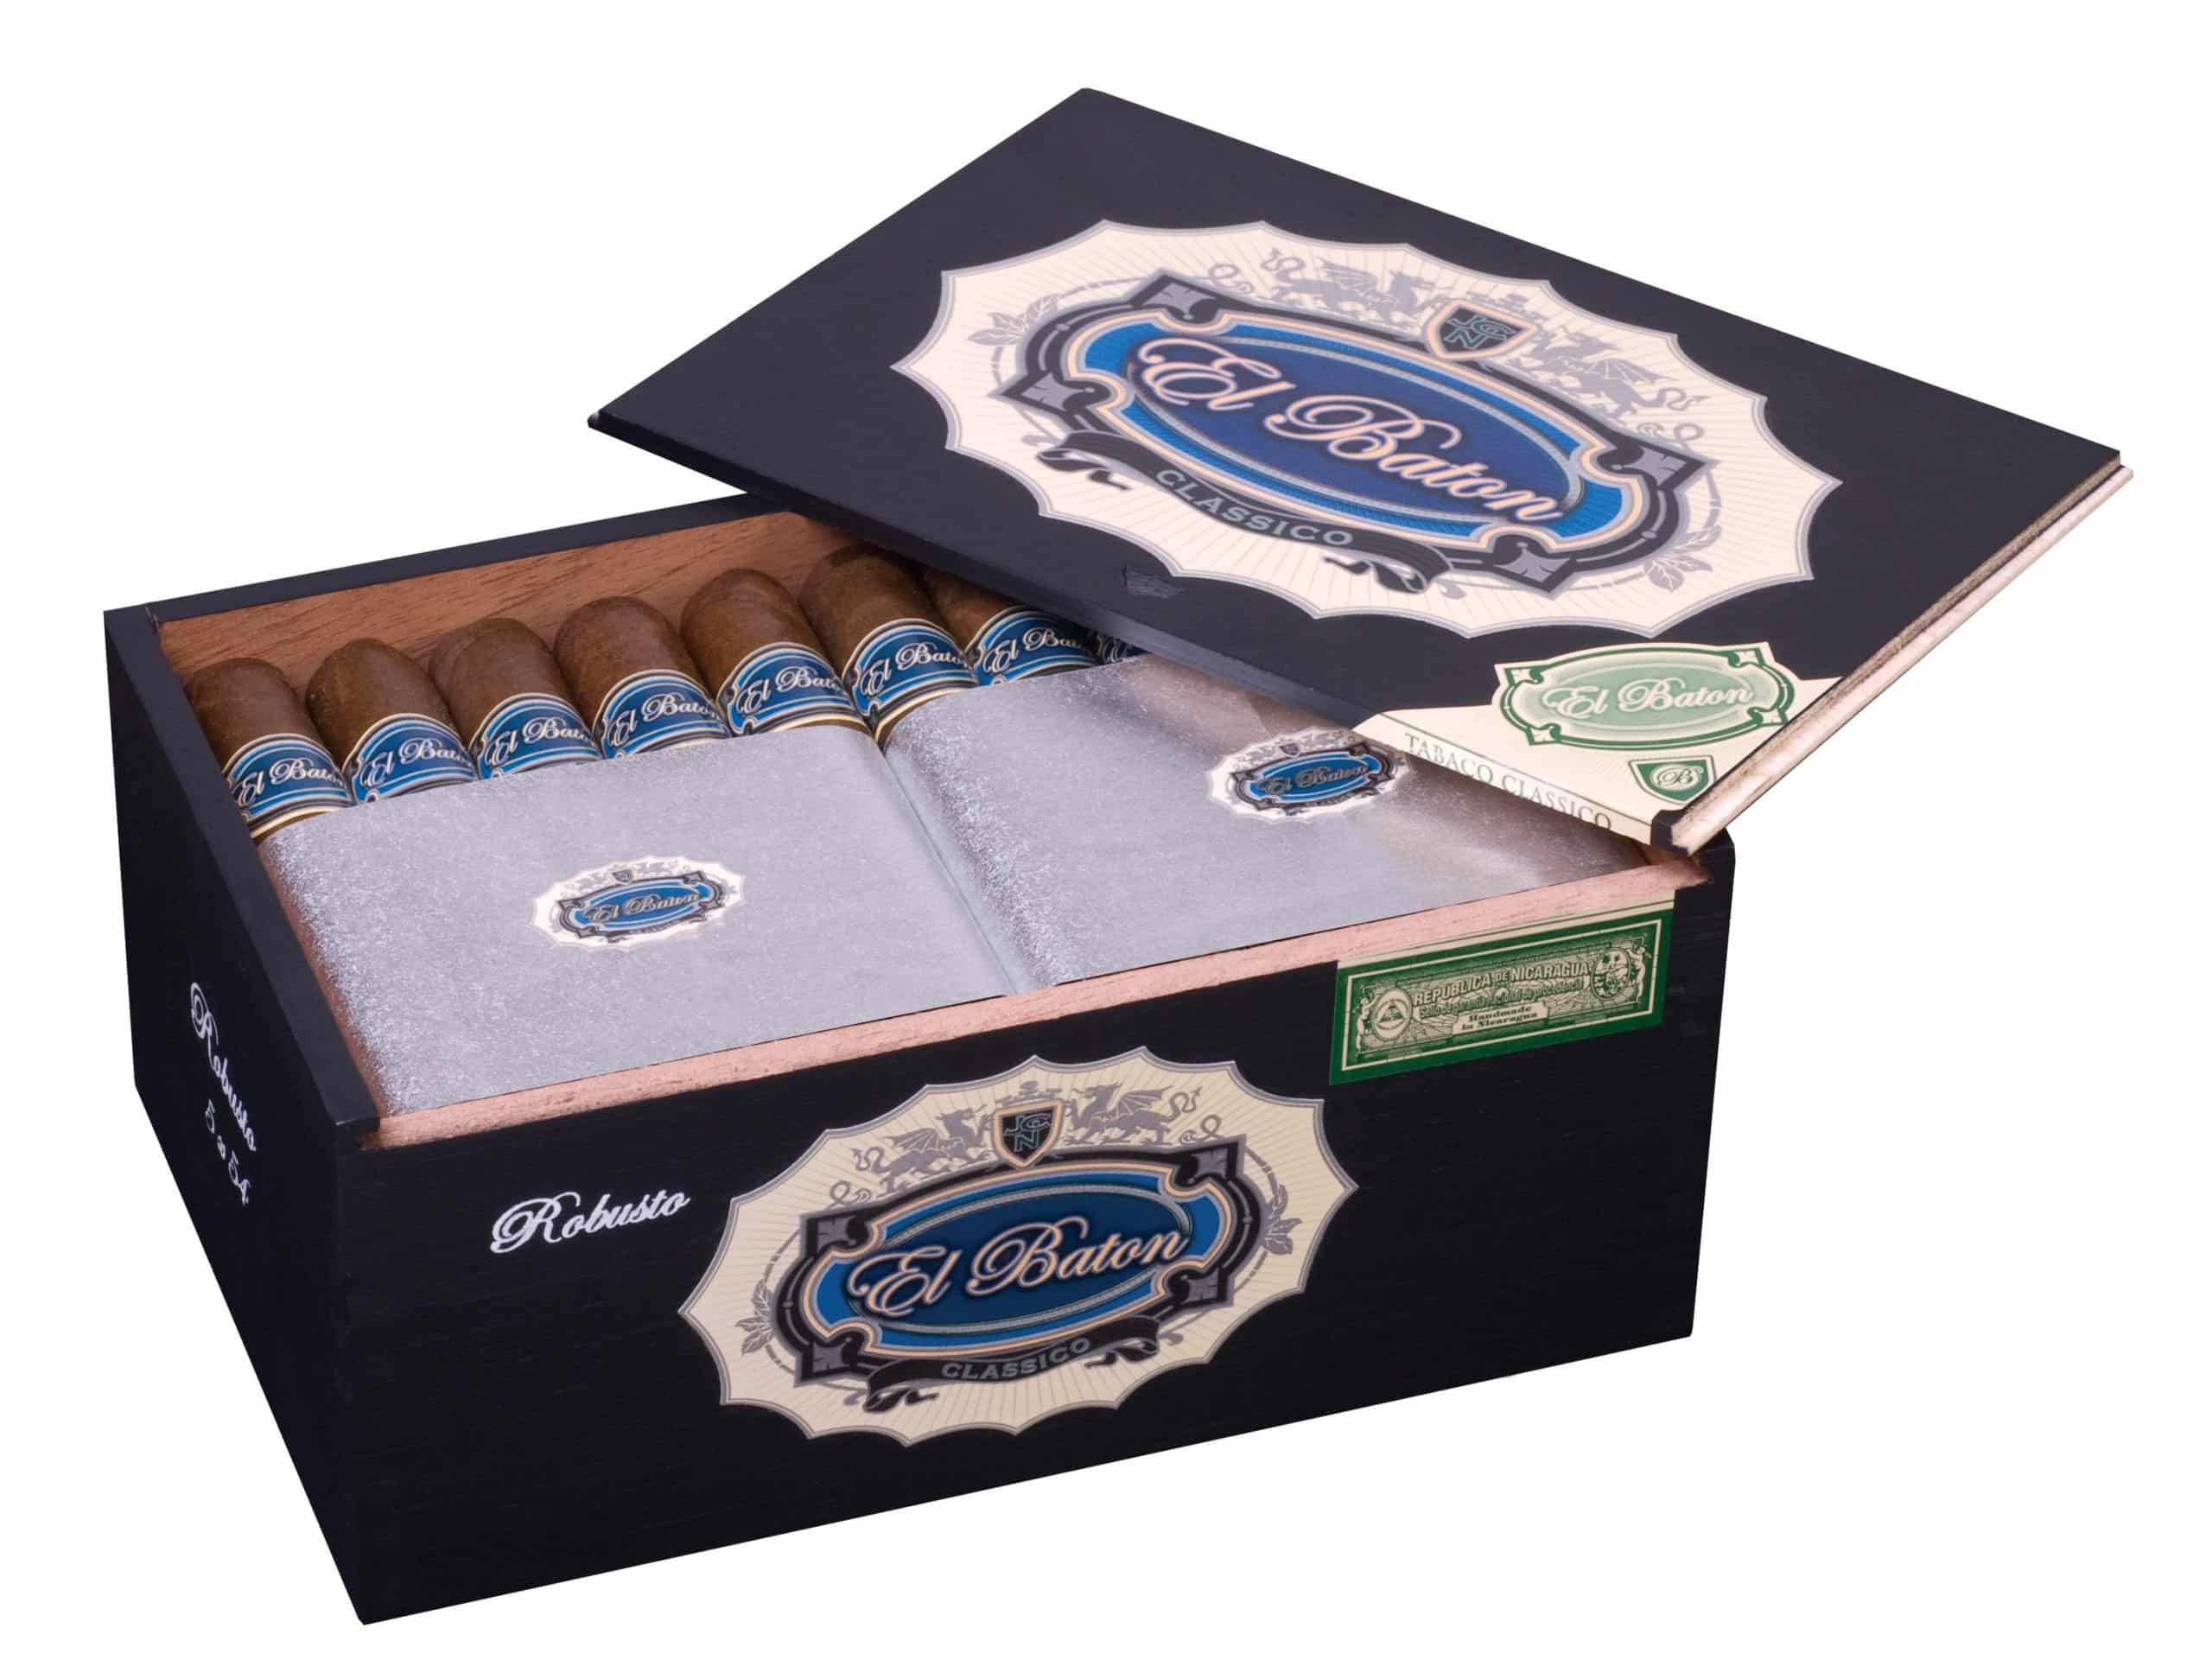 Open box of 25 count El Baton Robusto cigars